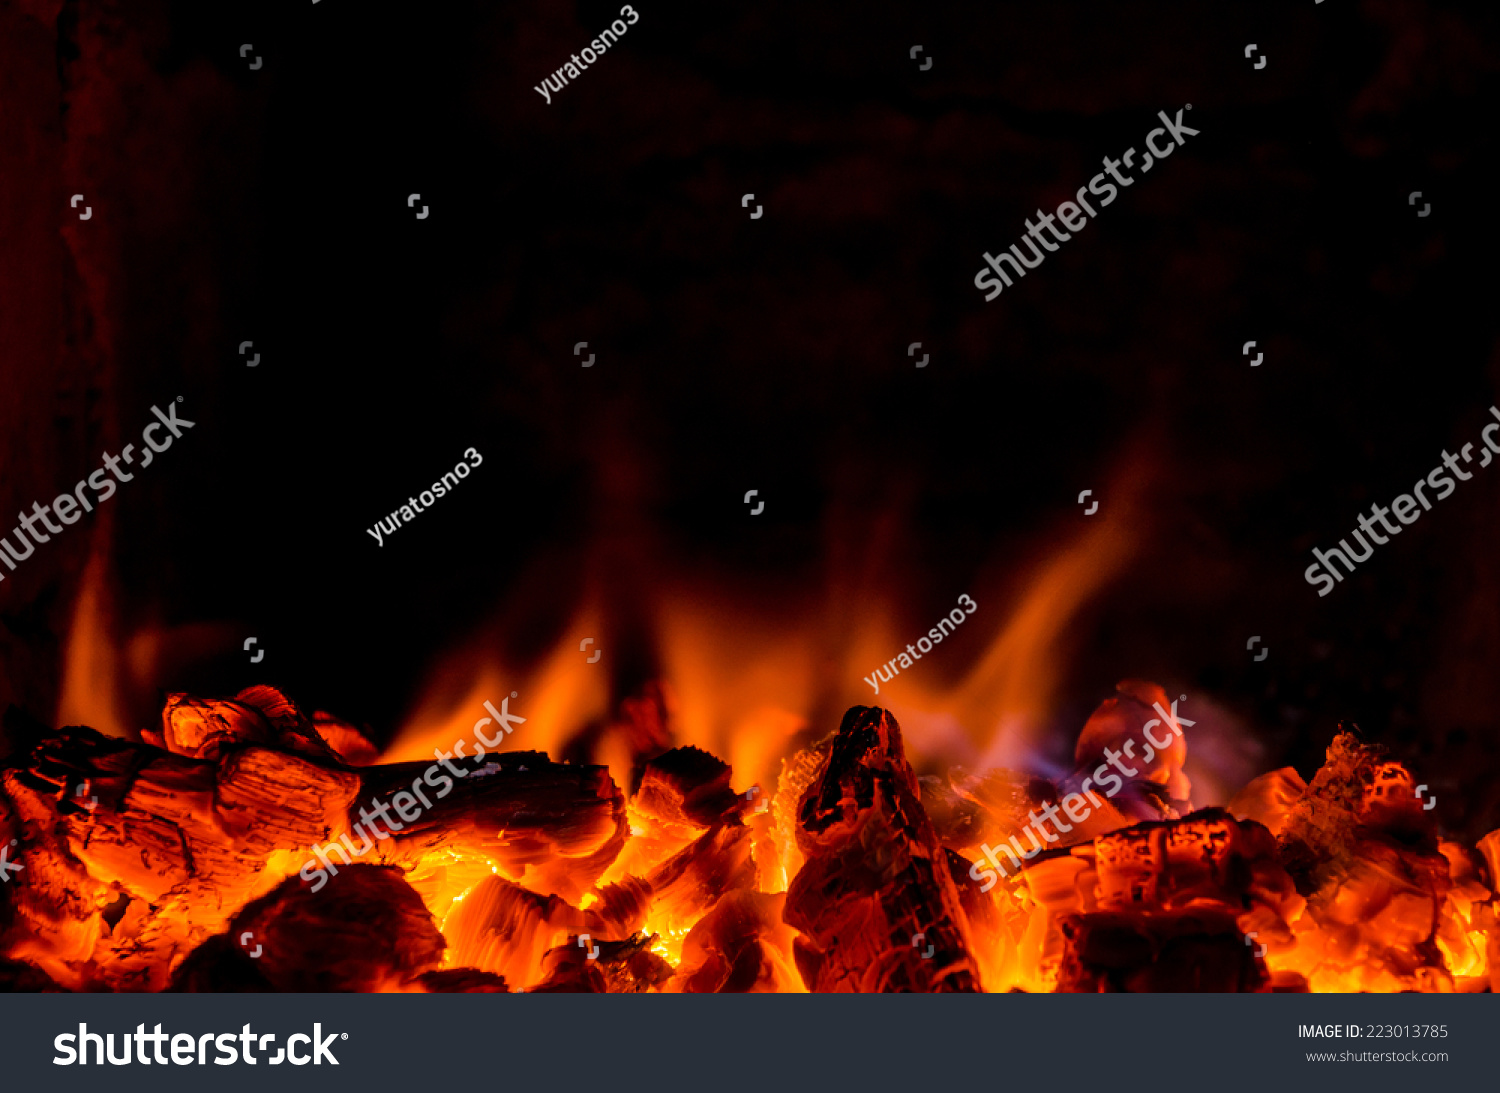 Hot coals in the fire #223013785